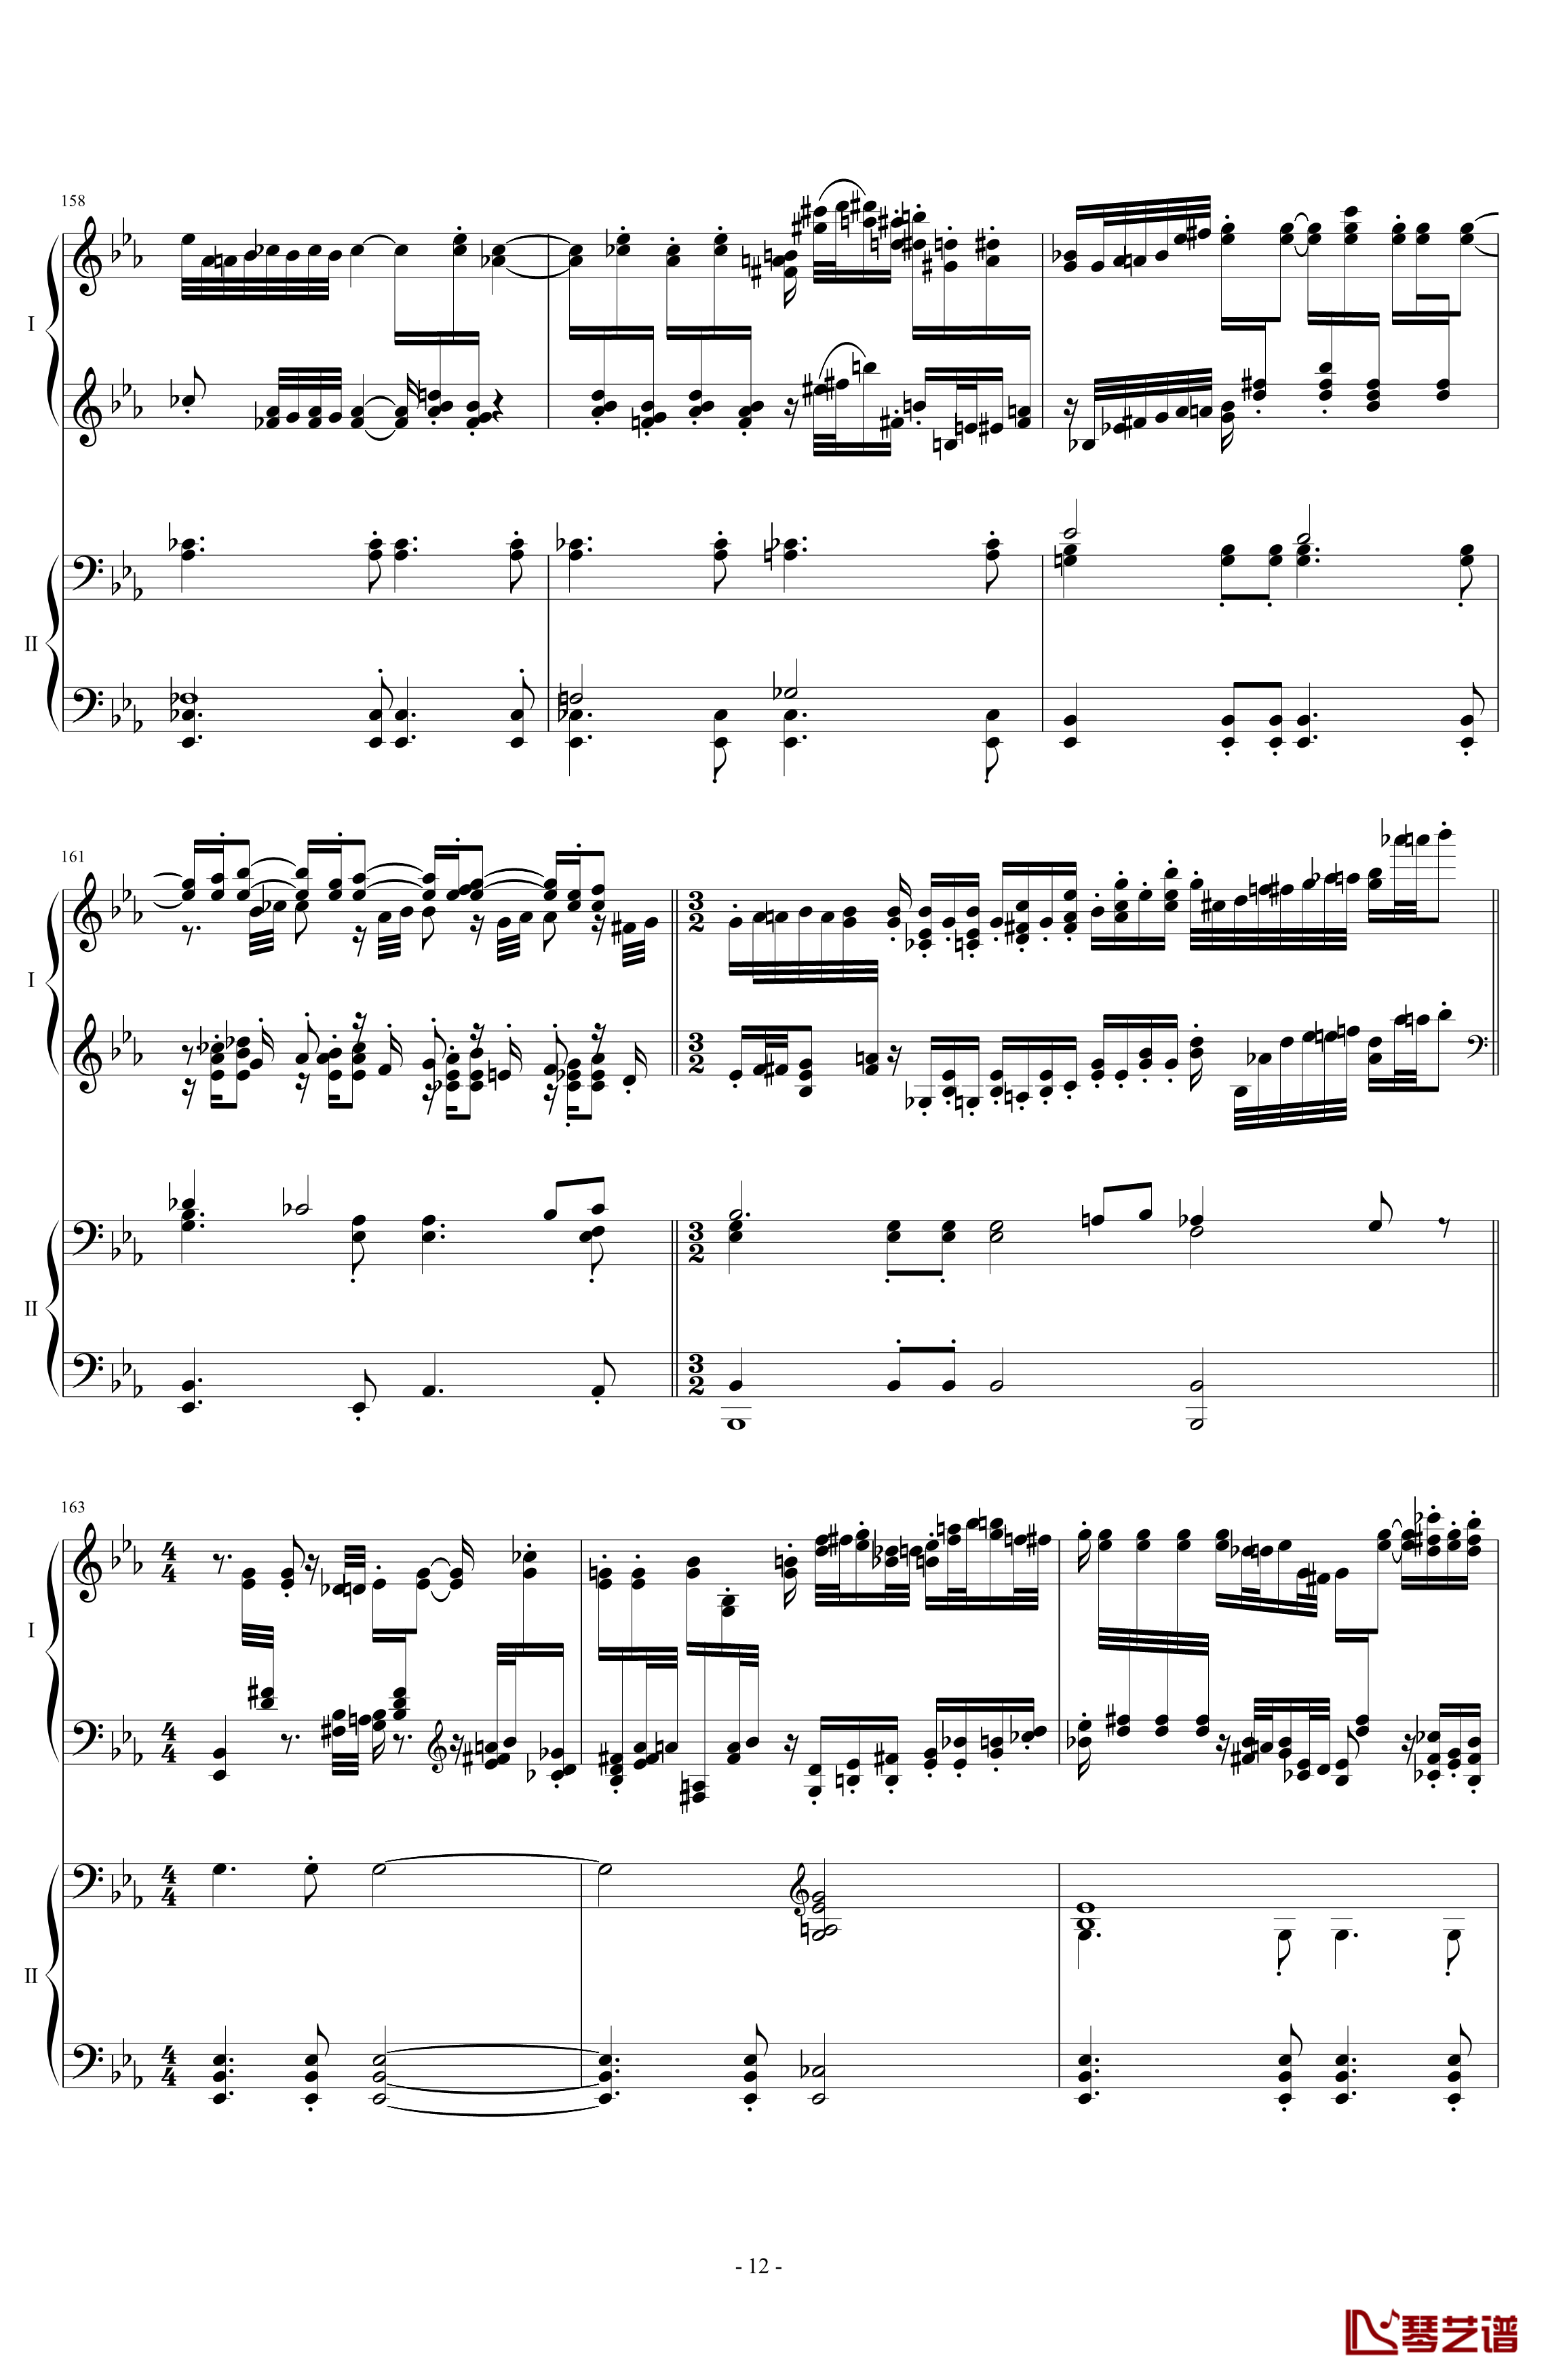 拉三第三乐章41页双钢琴钢琴谱-最难钢琴曲-拉赫马尼若夫12